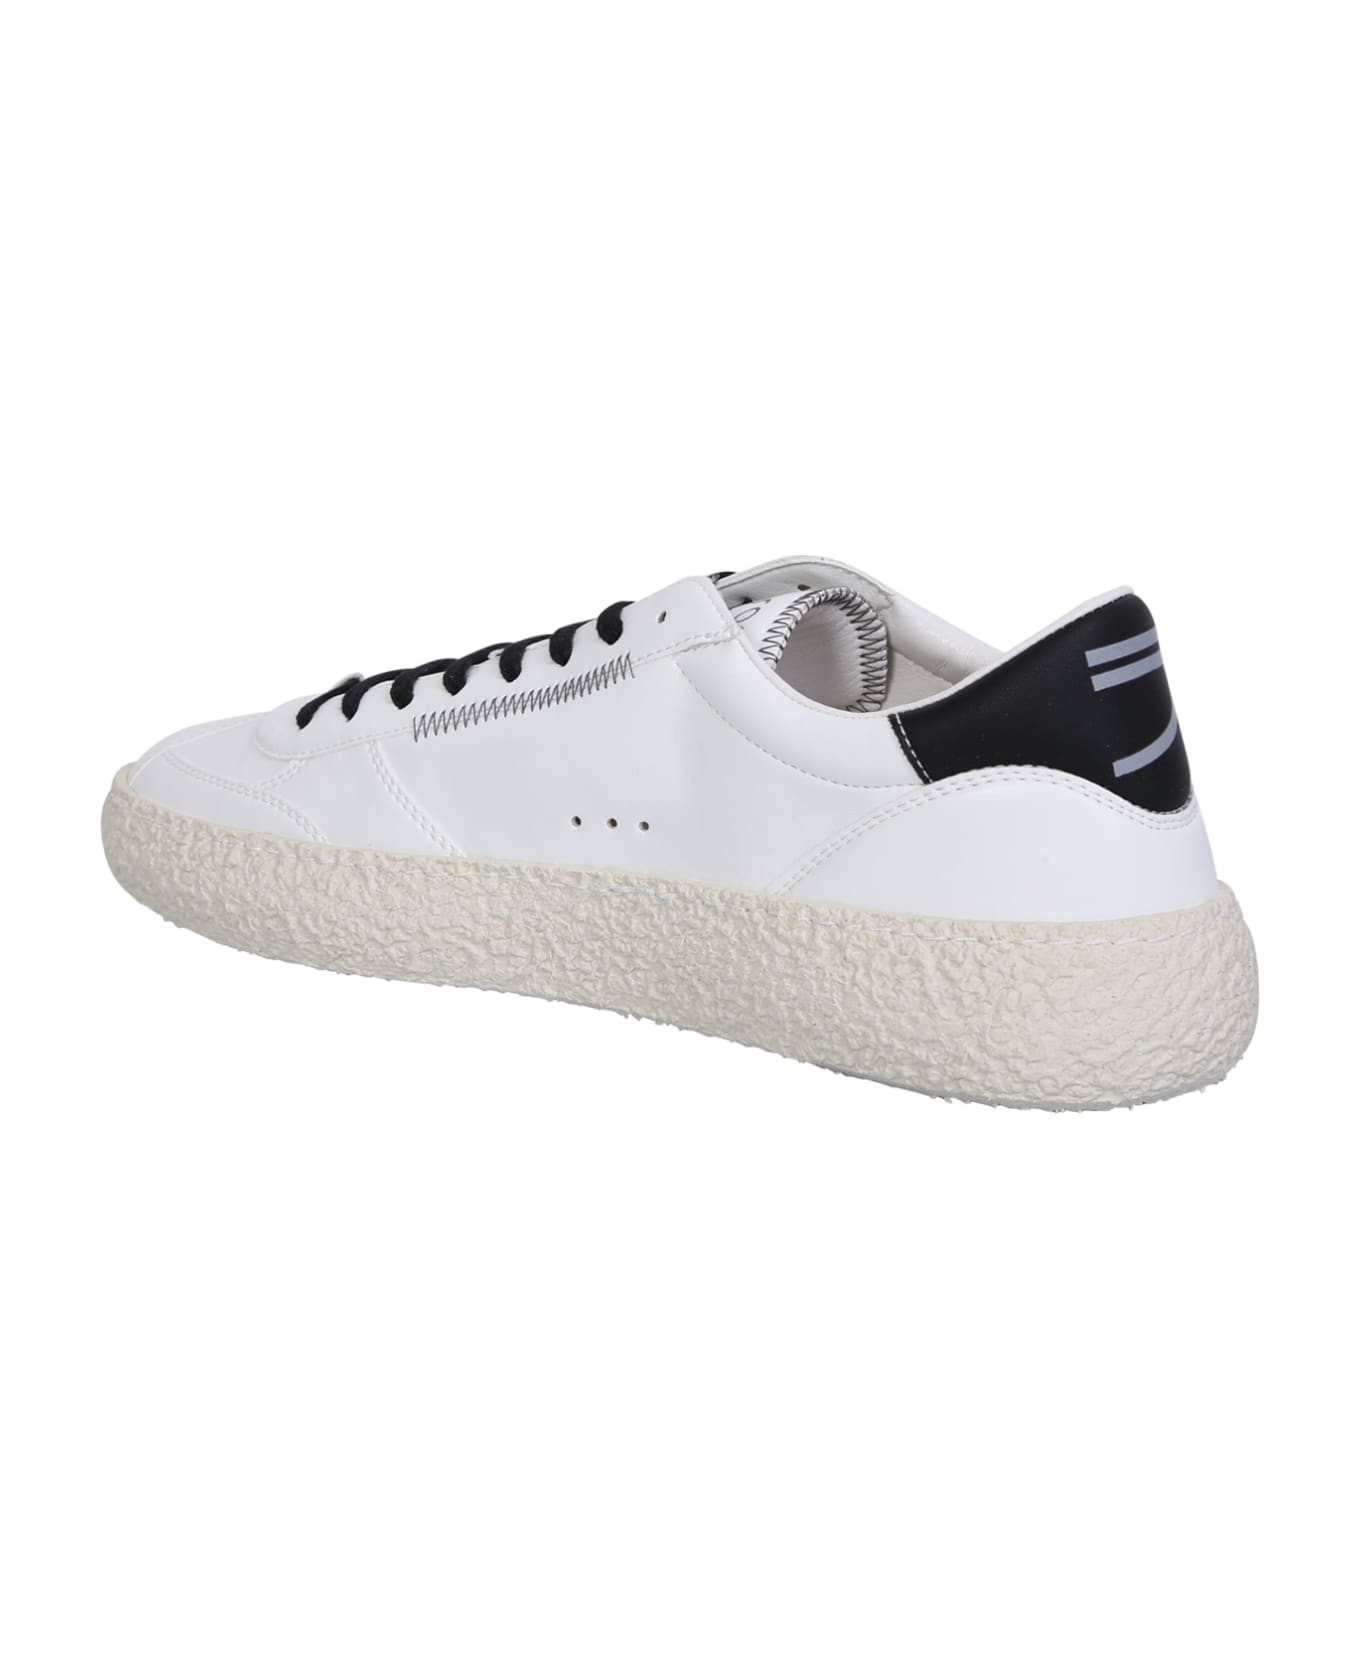 Puraai Low Sneakers - White